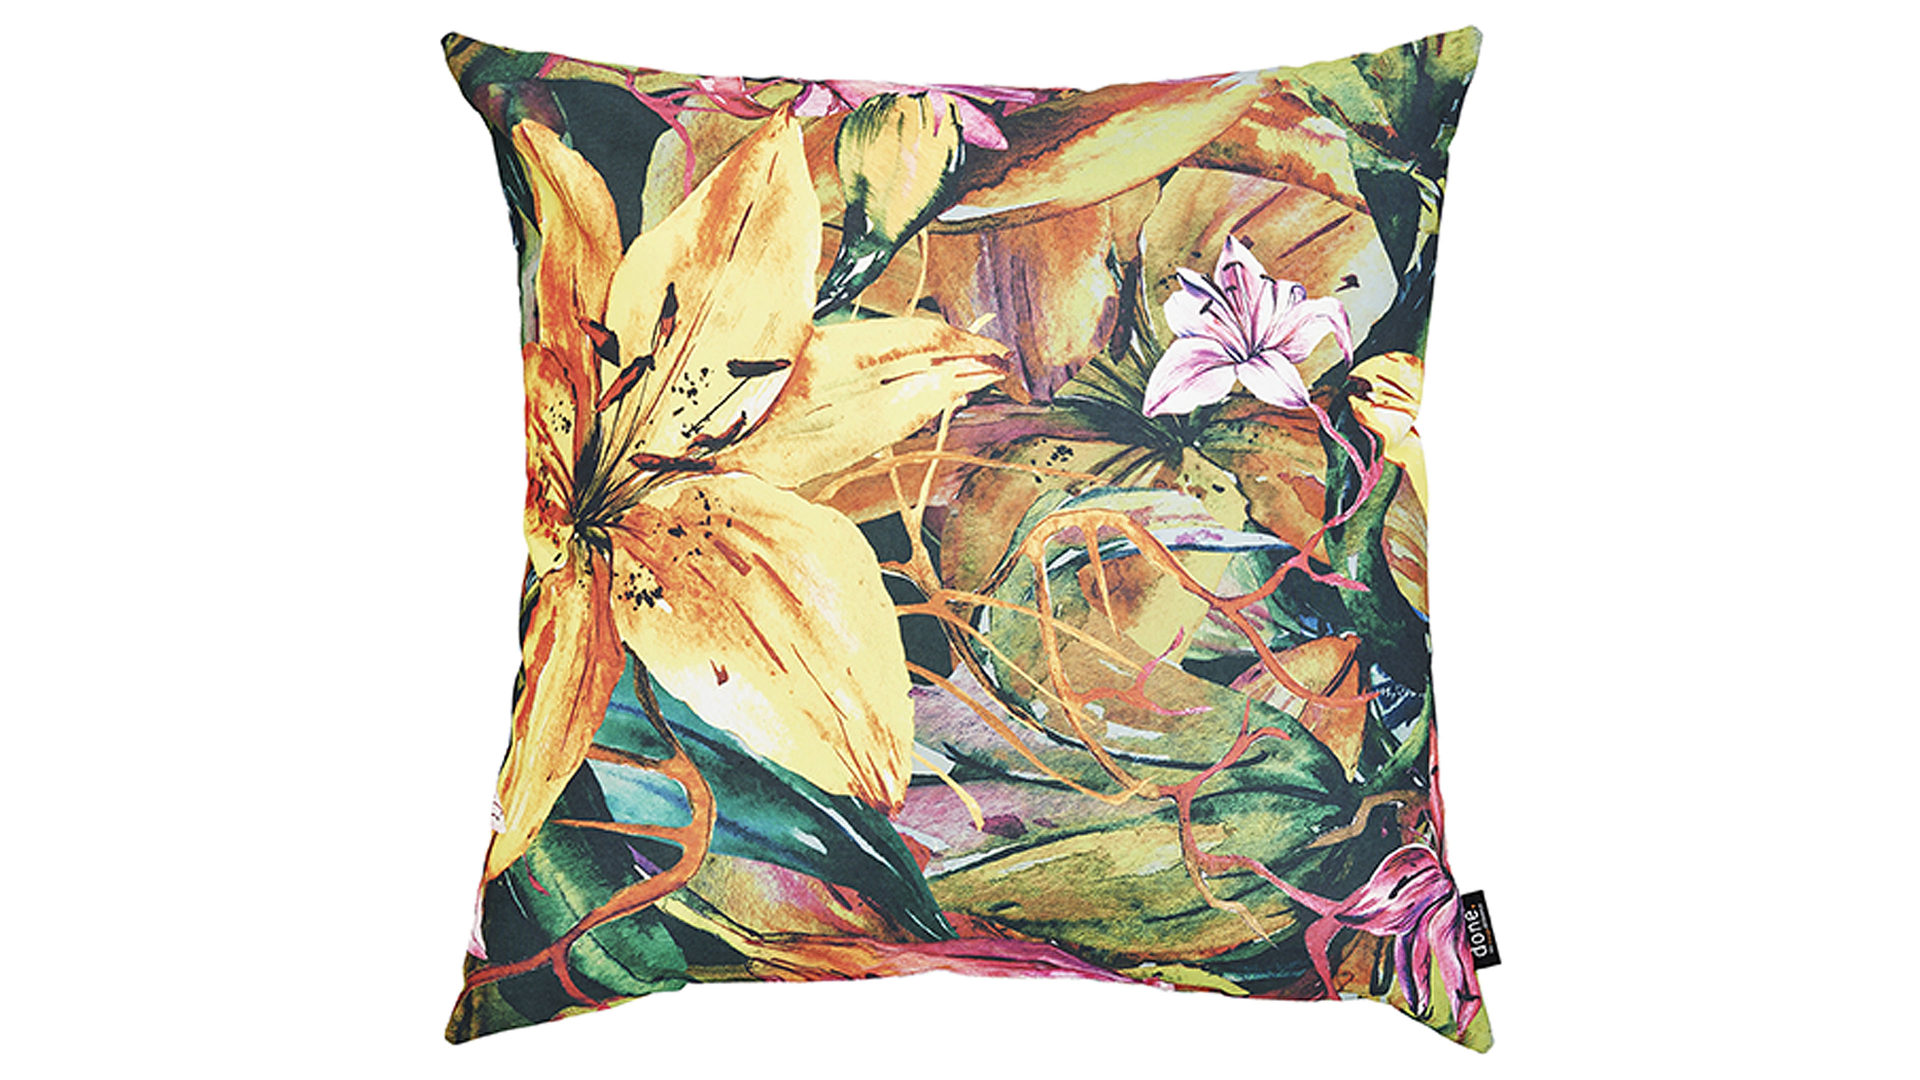 Einzelkissen Done.® aus Kunstfaser in Mehrfarbig done.® Kissen Cushion Outside Yellow Lily Dessin Lilie – ca. 65 x 65 cm